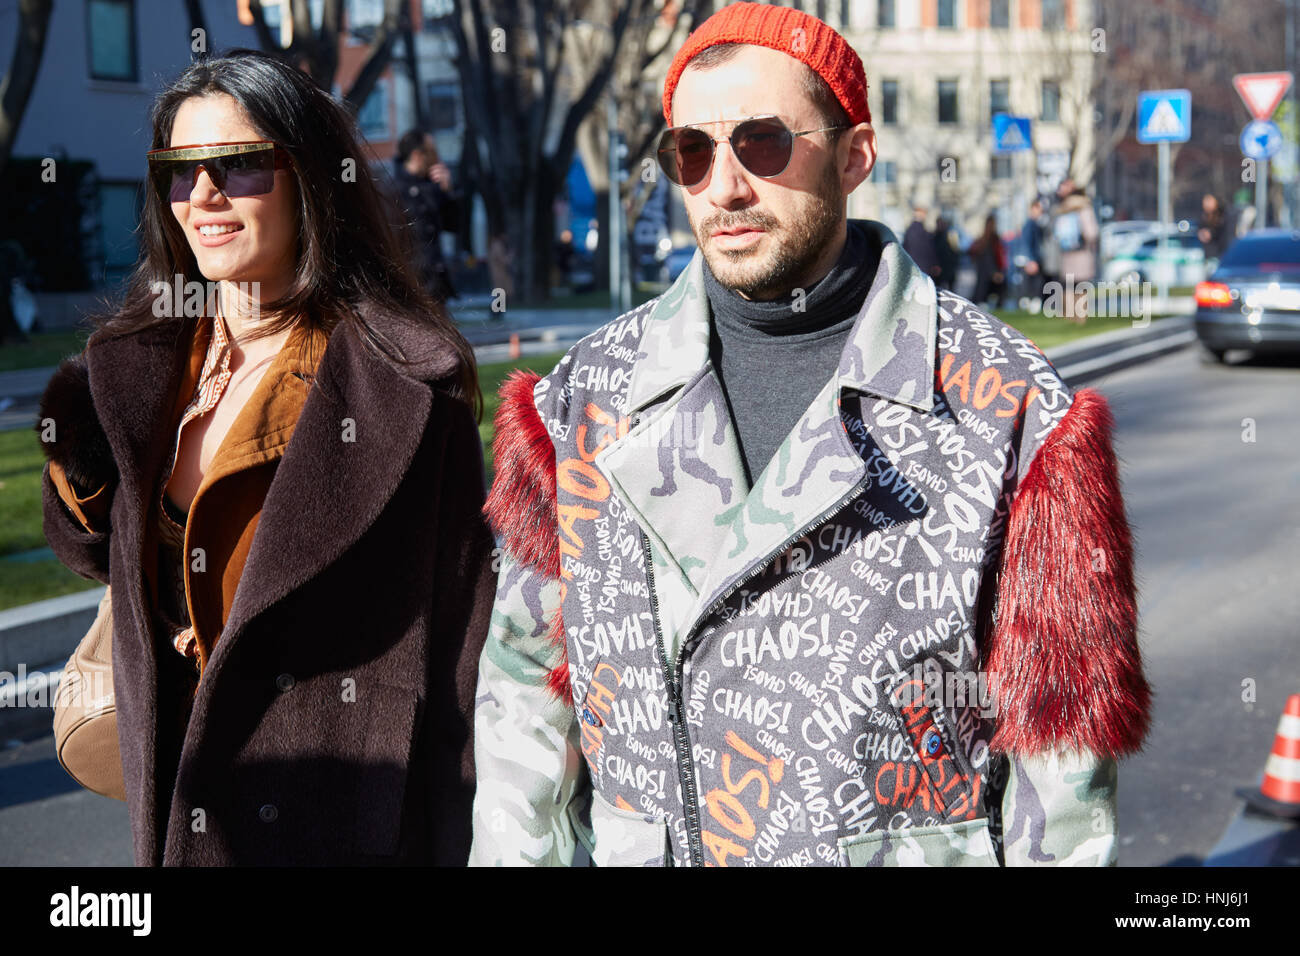 MILAN - janvier 17 : La femme et l'homme marchant à Giorgio Armani fashion show, Milan Fashion Week street style le 17 janvier 2017 à Milan. Banque D'Images